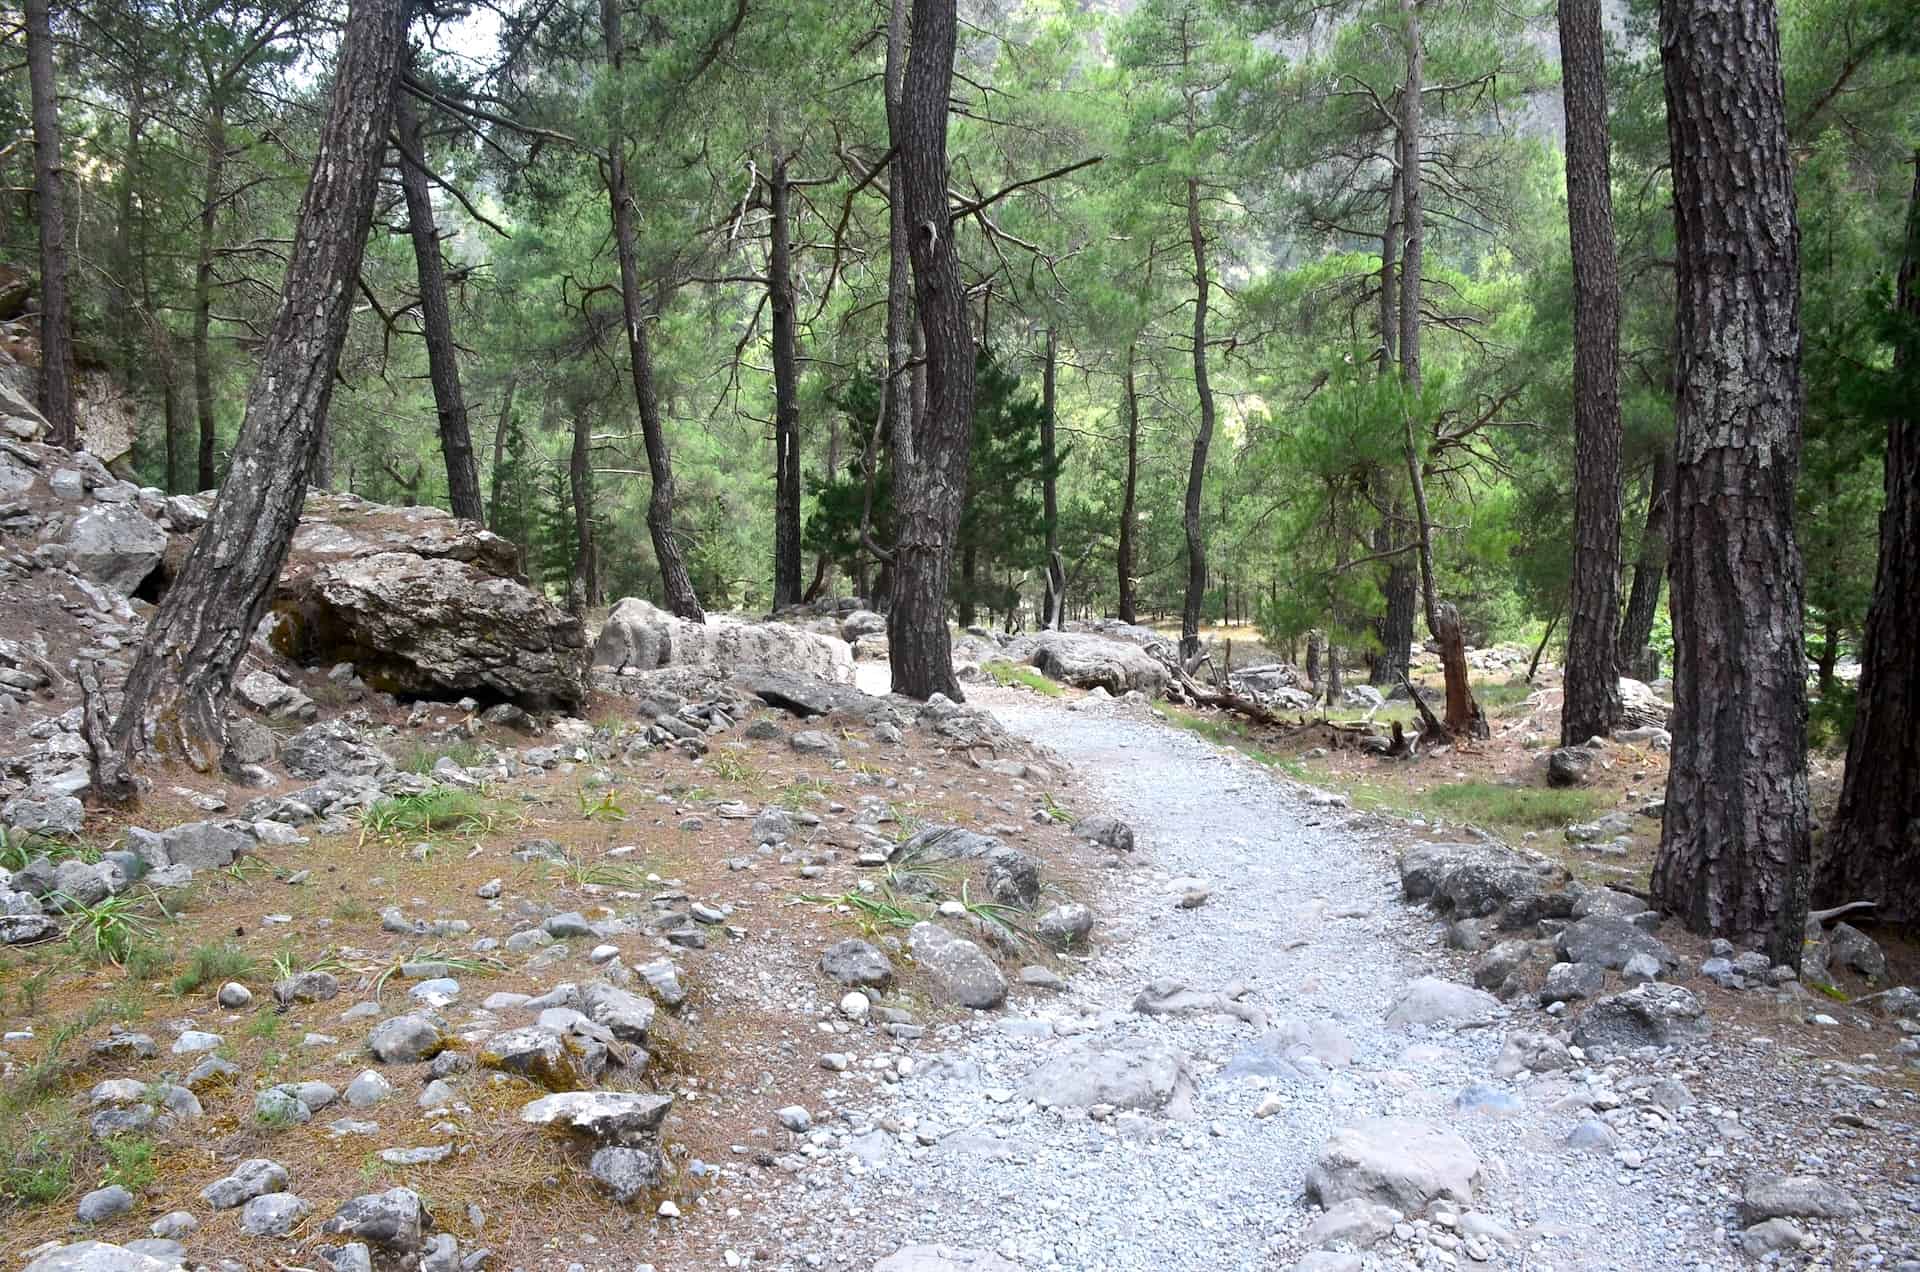 Walking through the forest on the trail from Samaria to Nero tis Perdikas